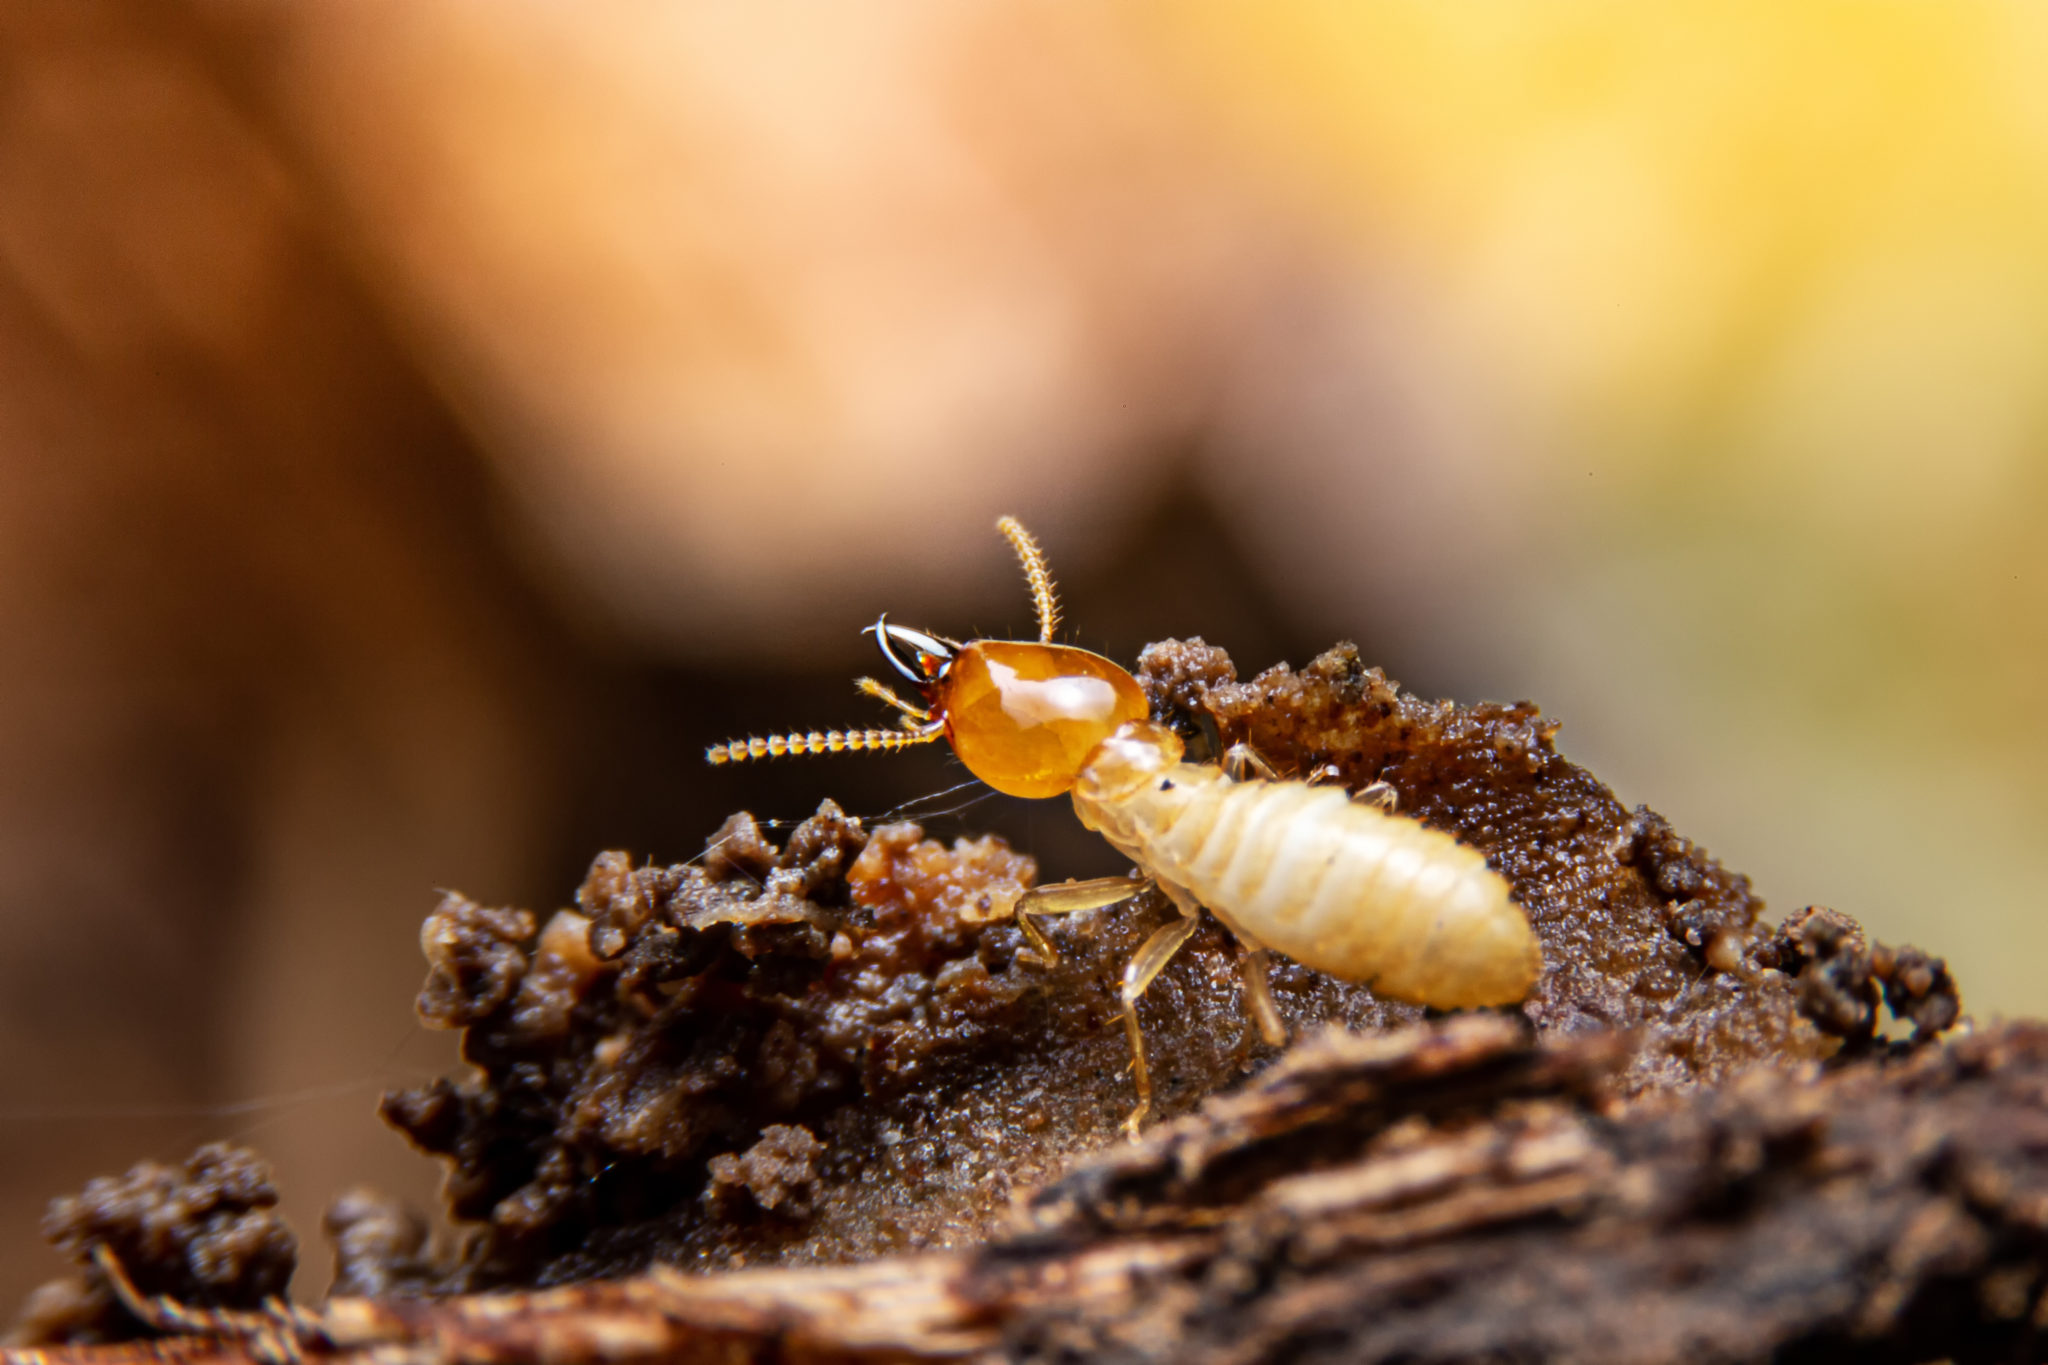 Termite pest control in Caringbah